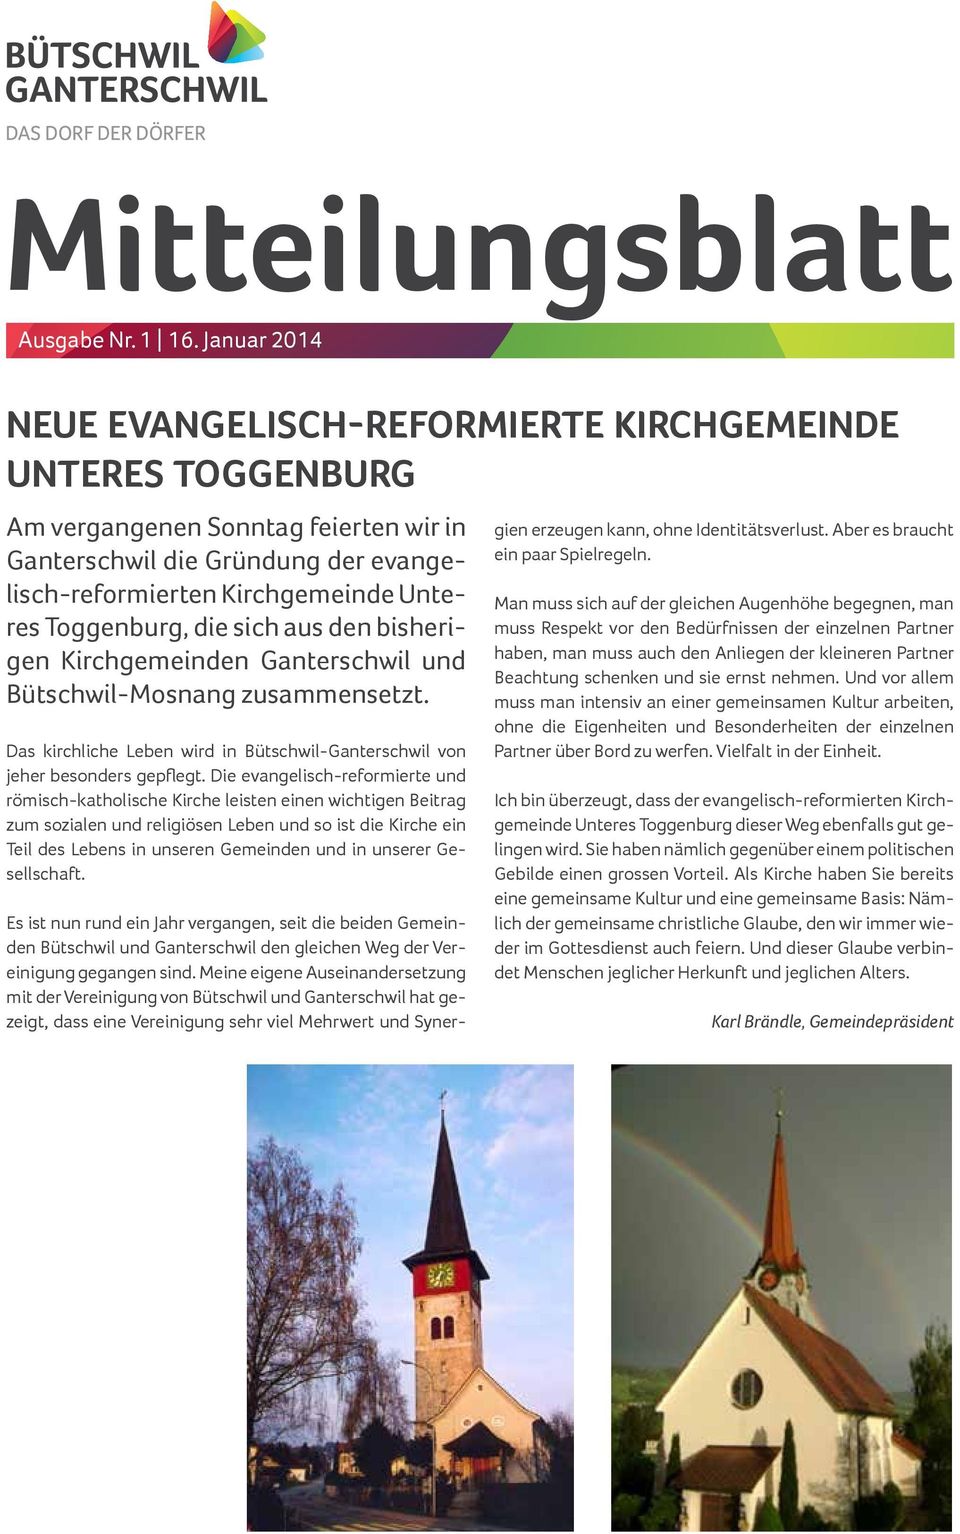 Toggenburg, die sich aus den bisherigen Kirchgemeinden Ganterschwil und Bütschwil-Mosnang zusammensetzt. Das kirchliche Leben wird in Bütschwil-Ganterschwil von jeher besonders gepflegt.